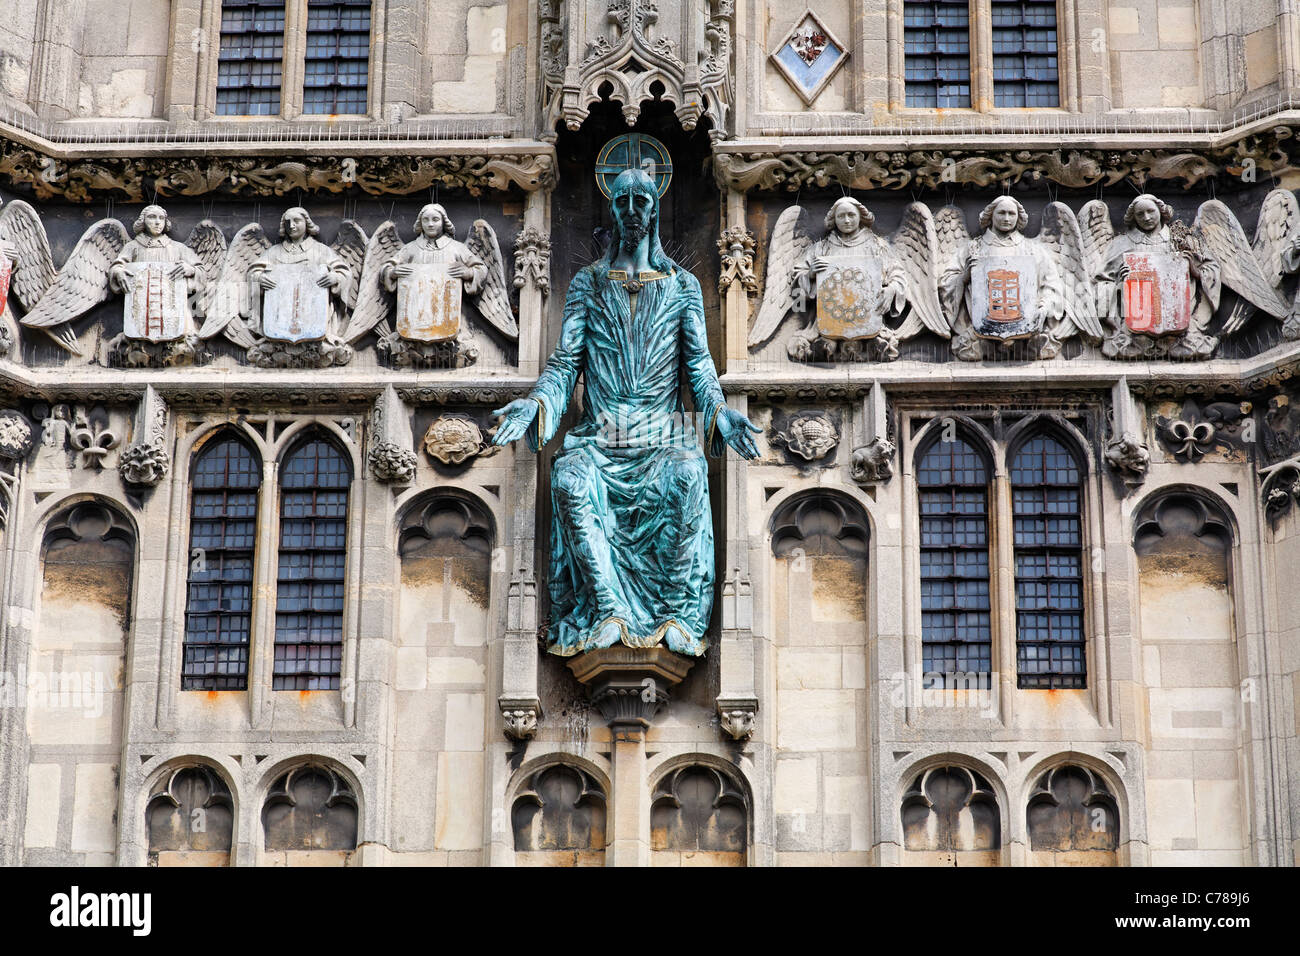 La figure de Jésus Christ en bronze à la porte de la cathédrale La cathédrale de Canterbury, Kent, Angleterre Banque D'Images